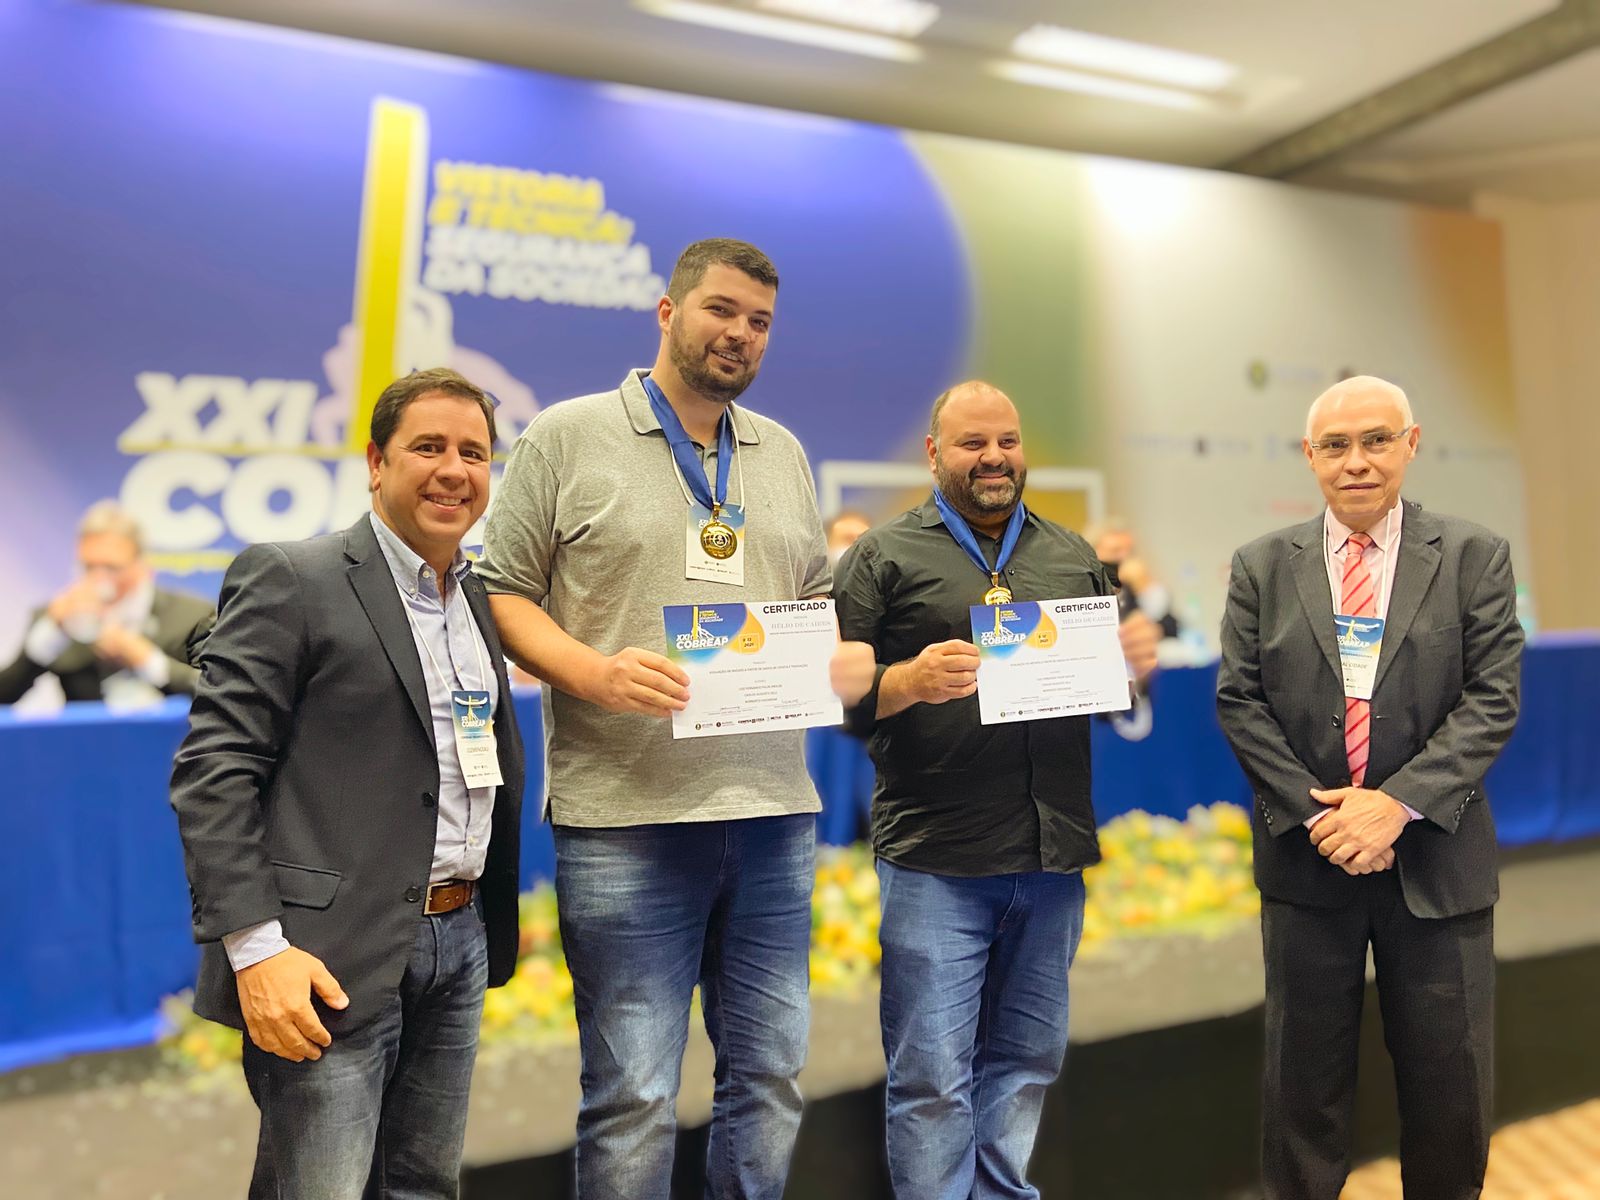 A premiação foi realizada no 21° Congresso Brasileiro de Engenharia de Avaliações e Perícias (Cobreap), na cidade de Goiânia (GO).